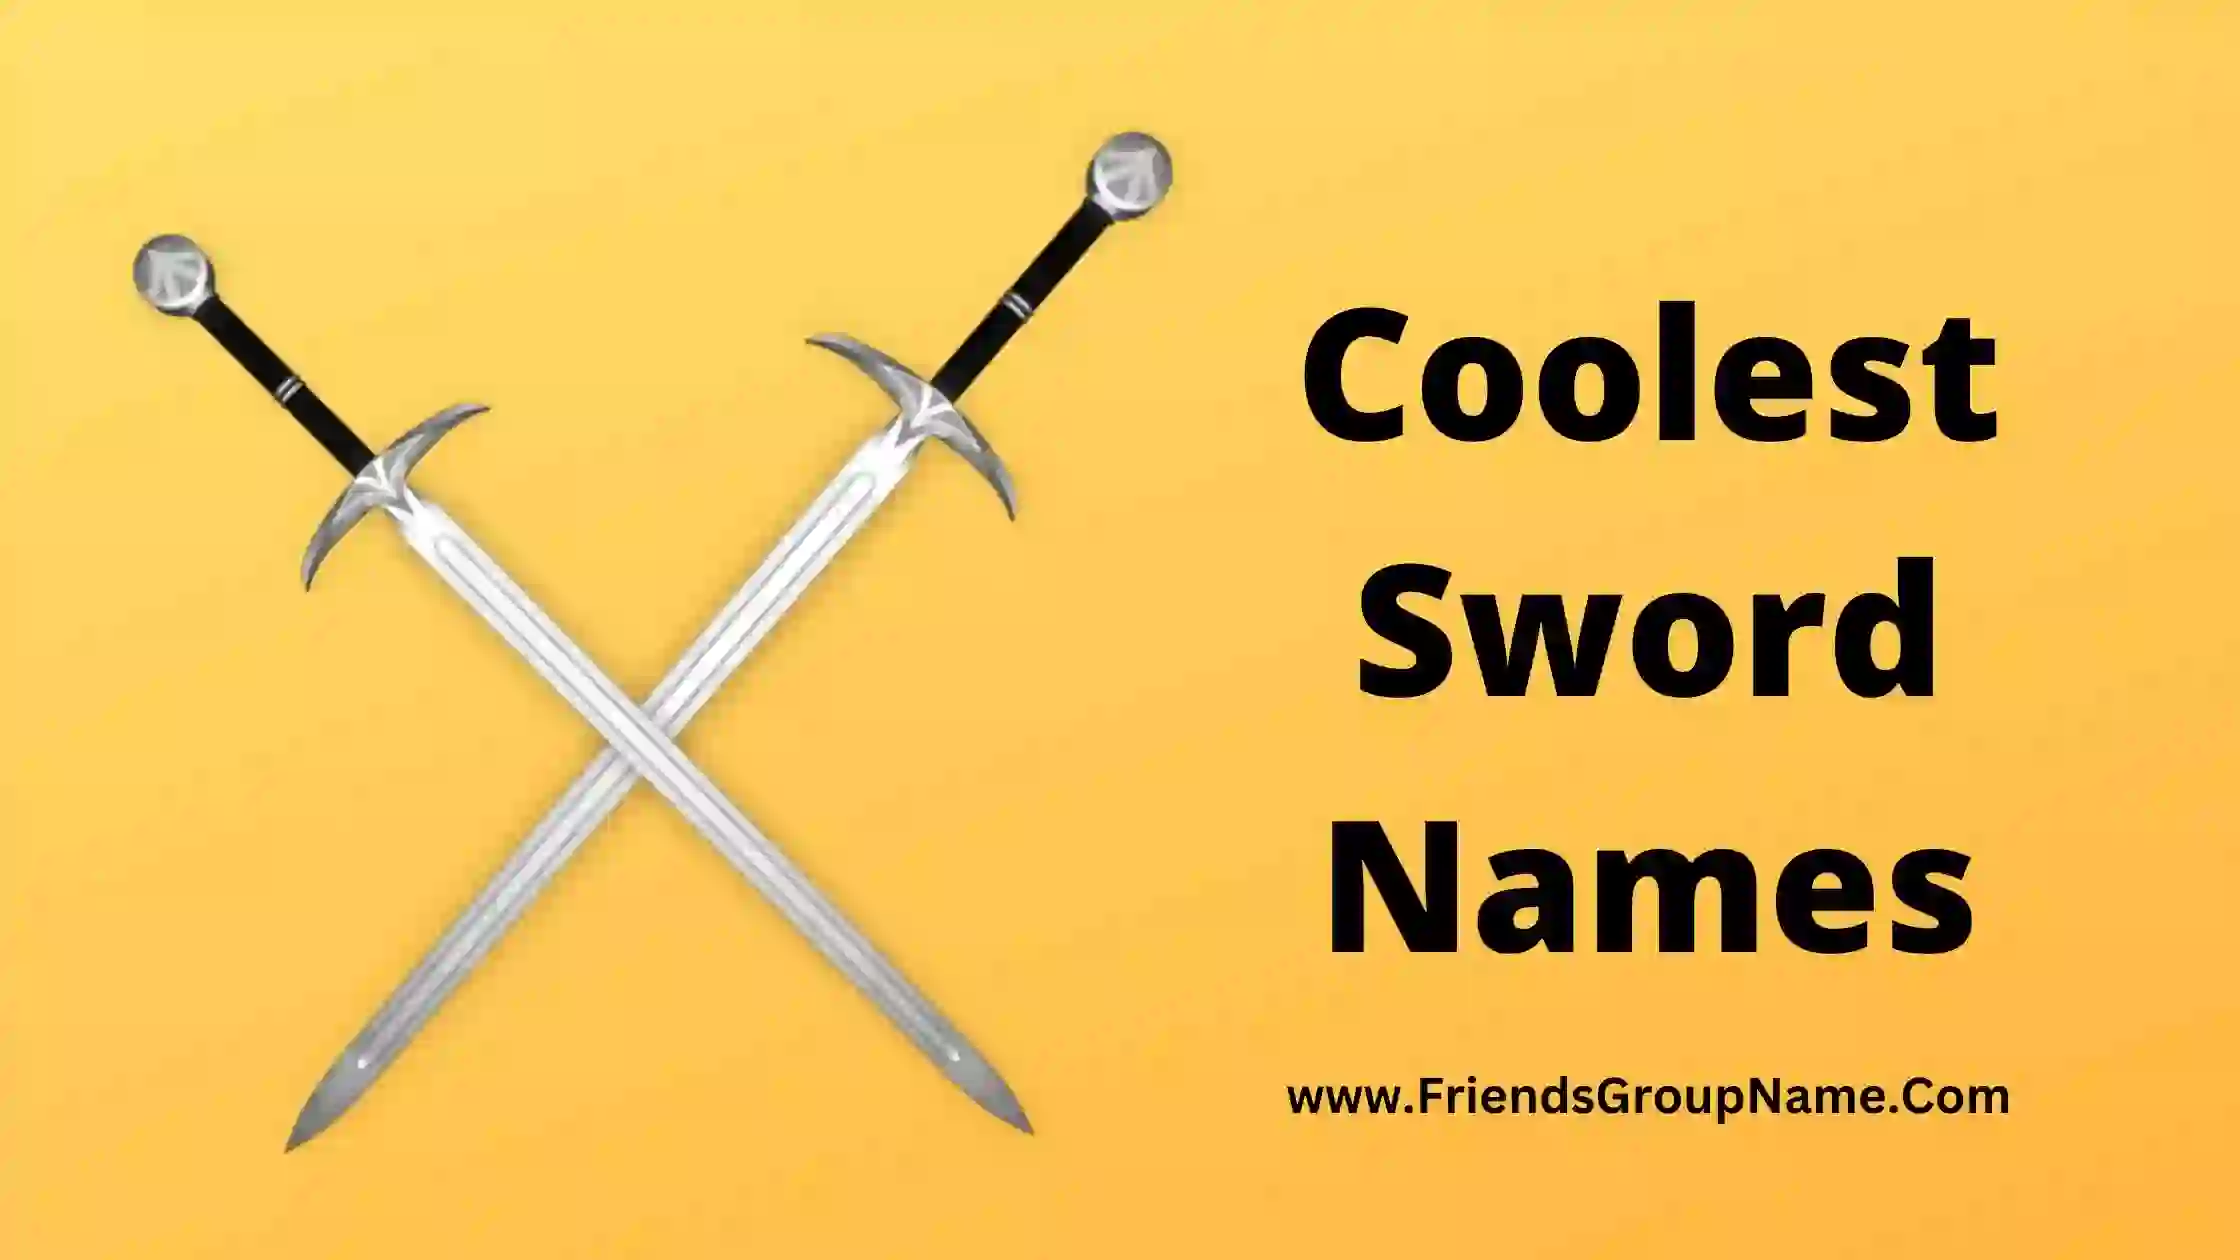 Coolest Sword Names